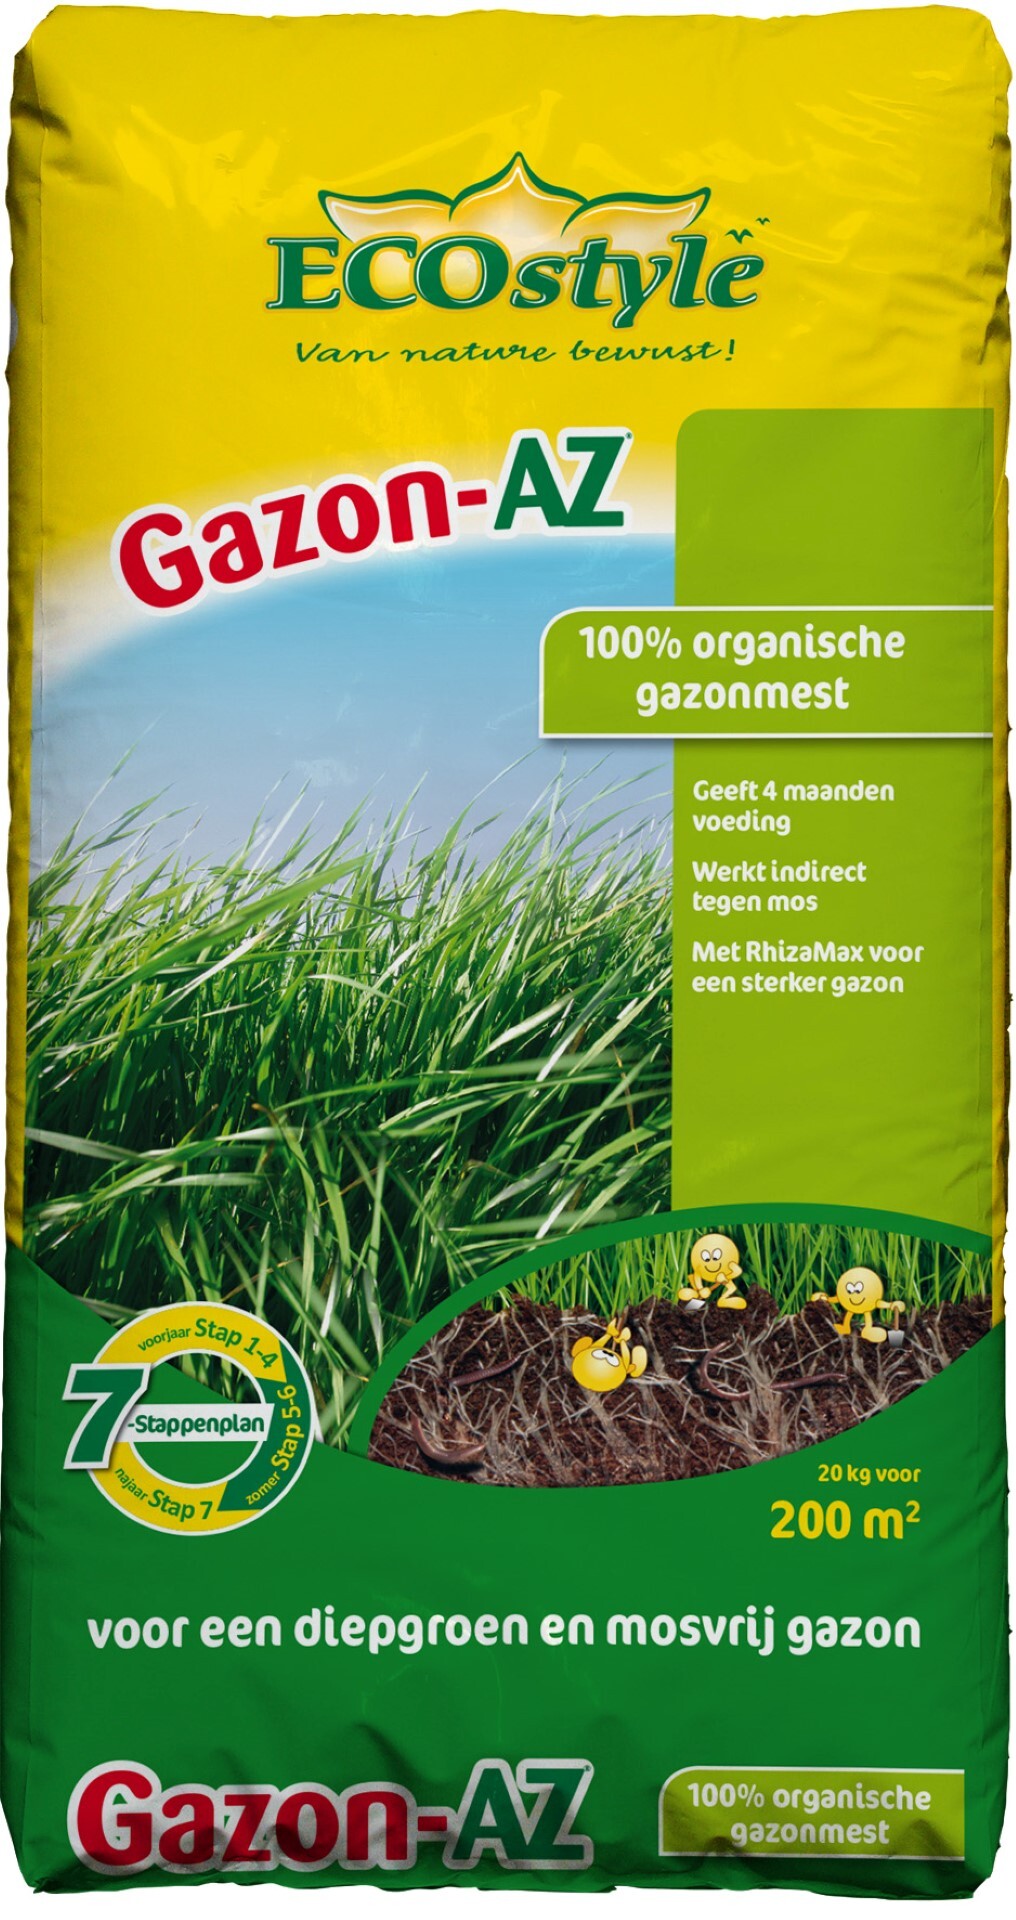 ECOSTYLE Gazon-AZ - 20 kg - gazonmeststof voor 200 m2 Voor een diepgroen mosvrij gazon